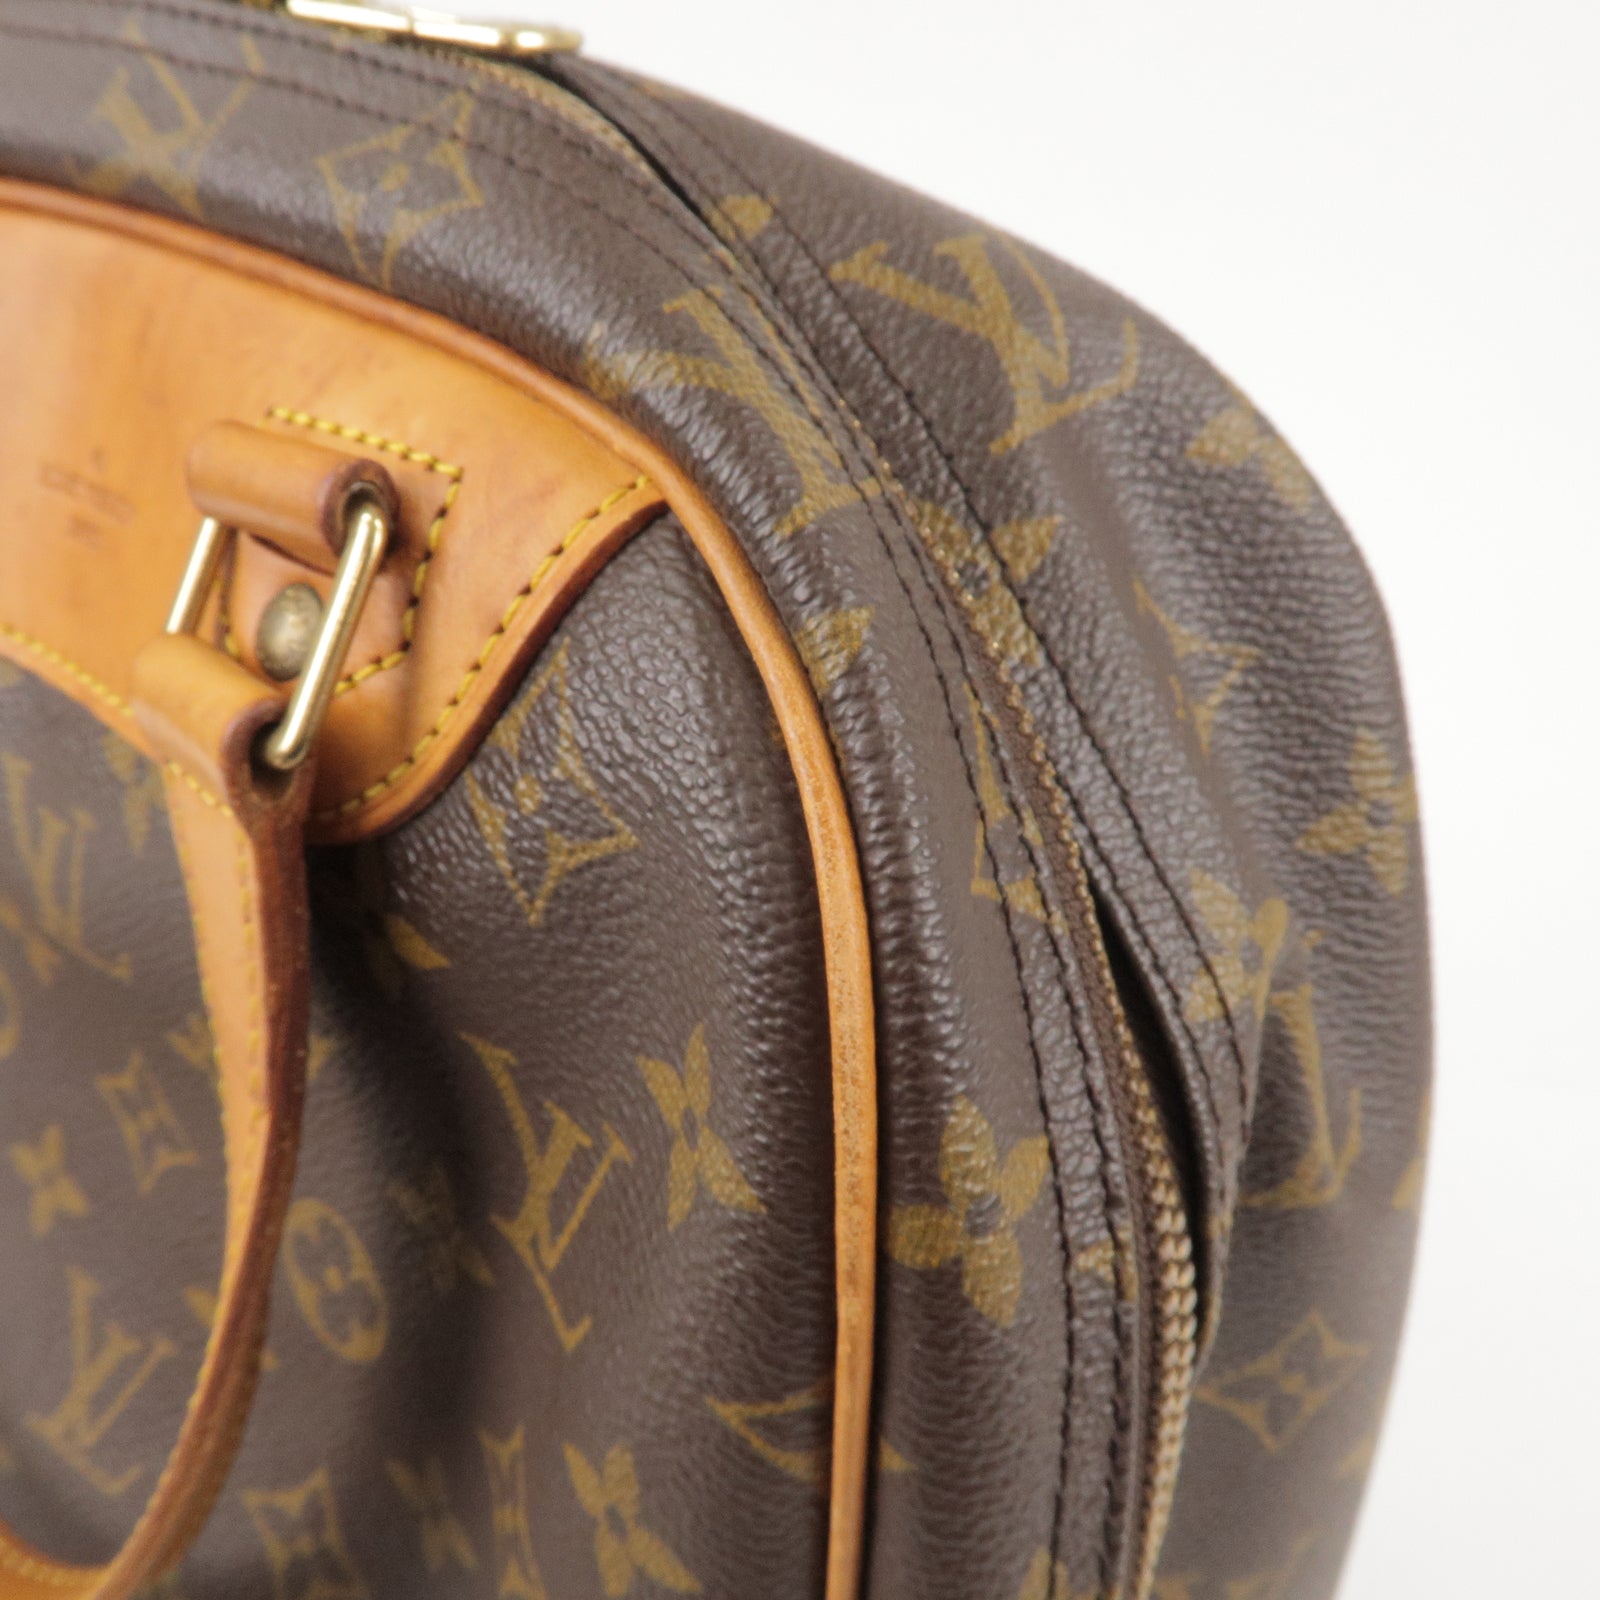 Authentic LOUIS VUITTON Monogram handbag Excursion M41450 leather brown